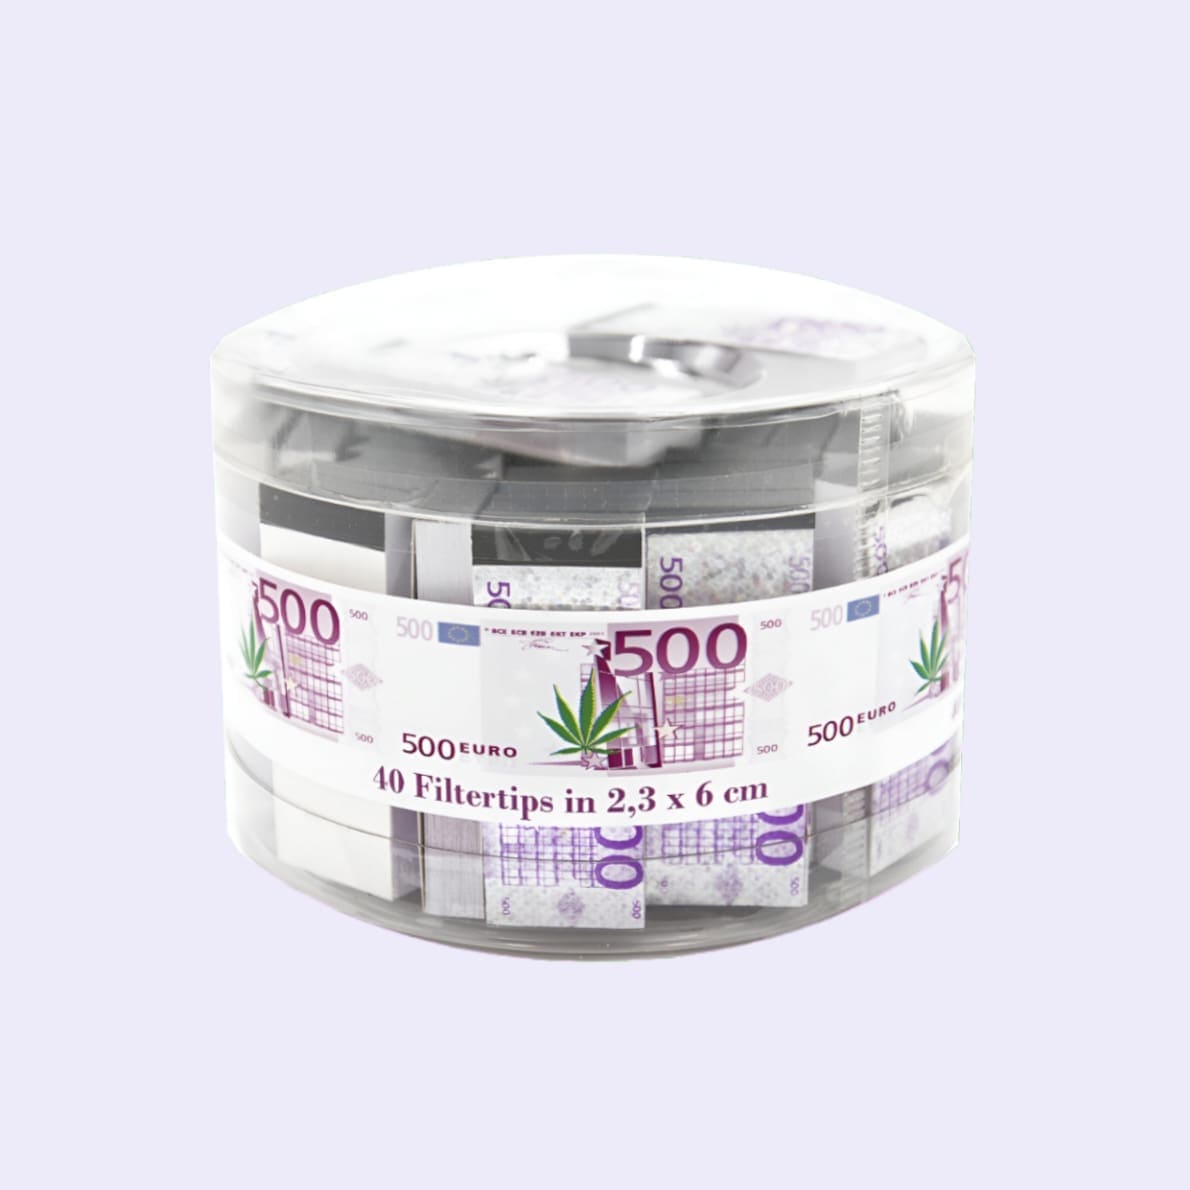 Dieses Bild zeigt die 500 Euro Filter Tips Dose